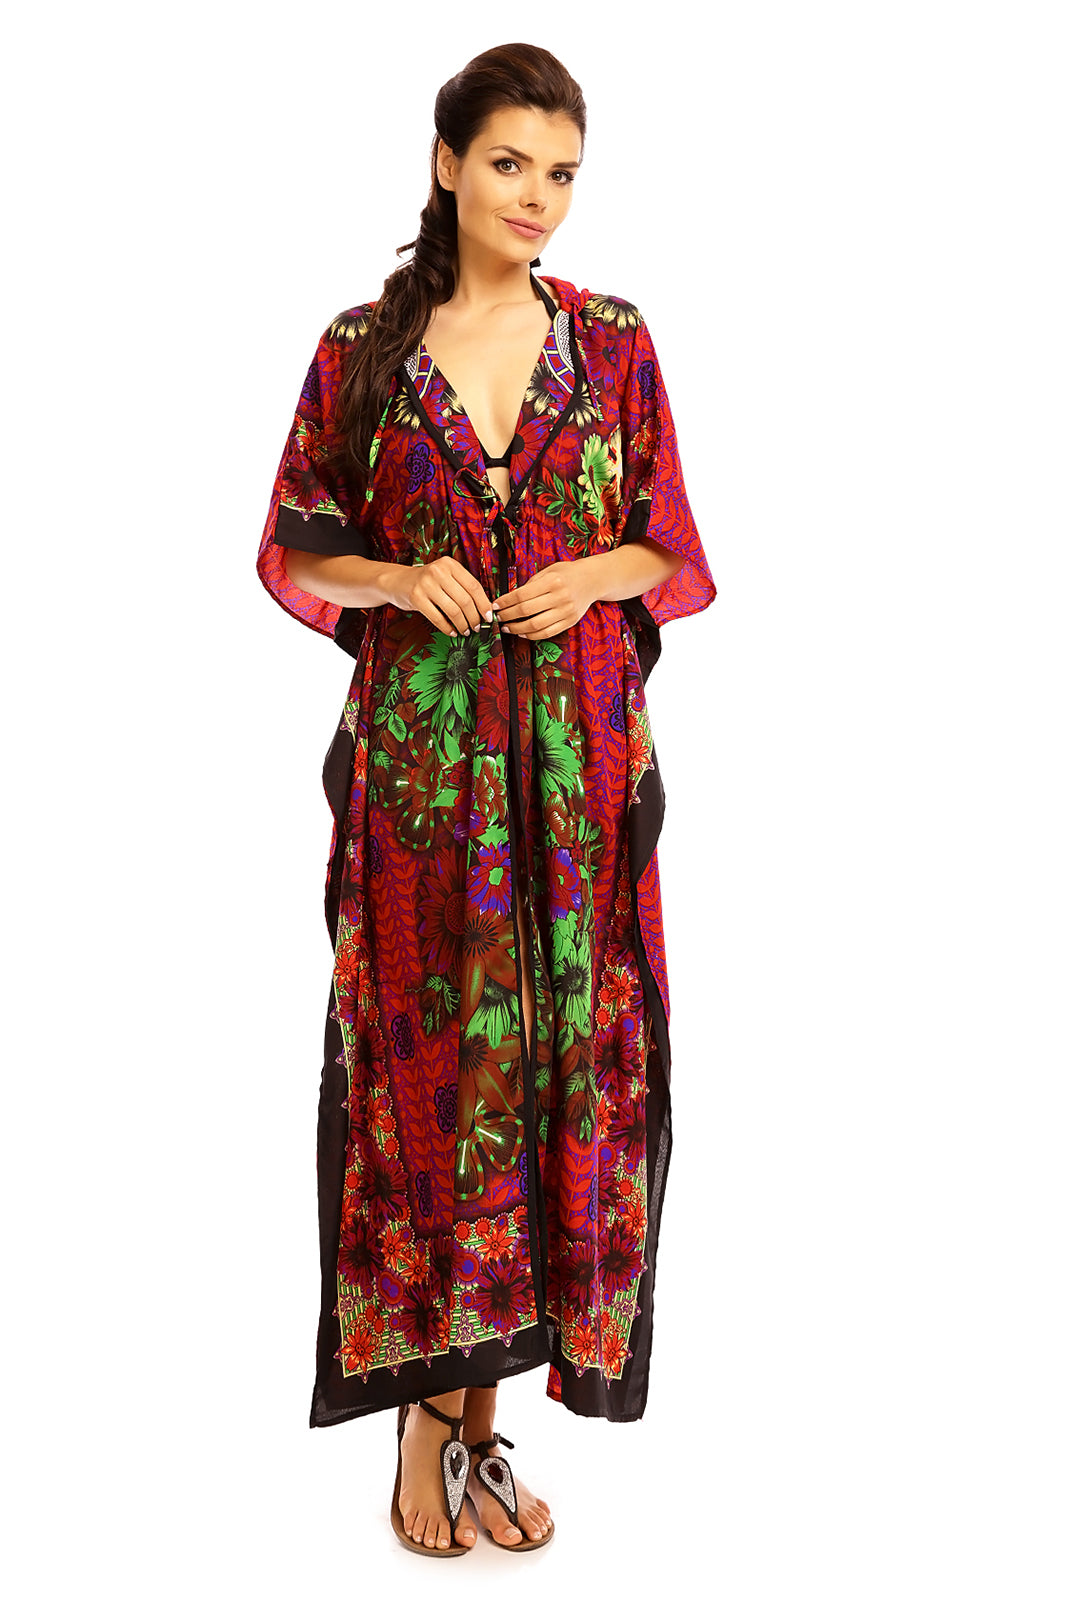 Ladies Hooded Kimono Gown Kaftan in Tribal Print  -  Purple - Pack of 12